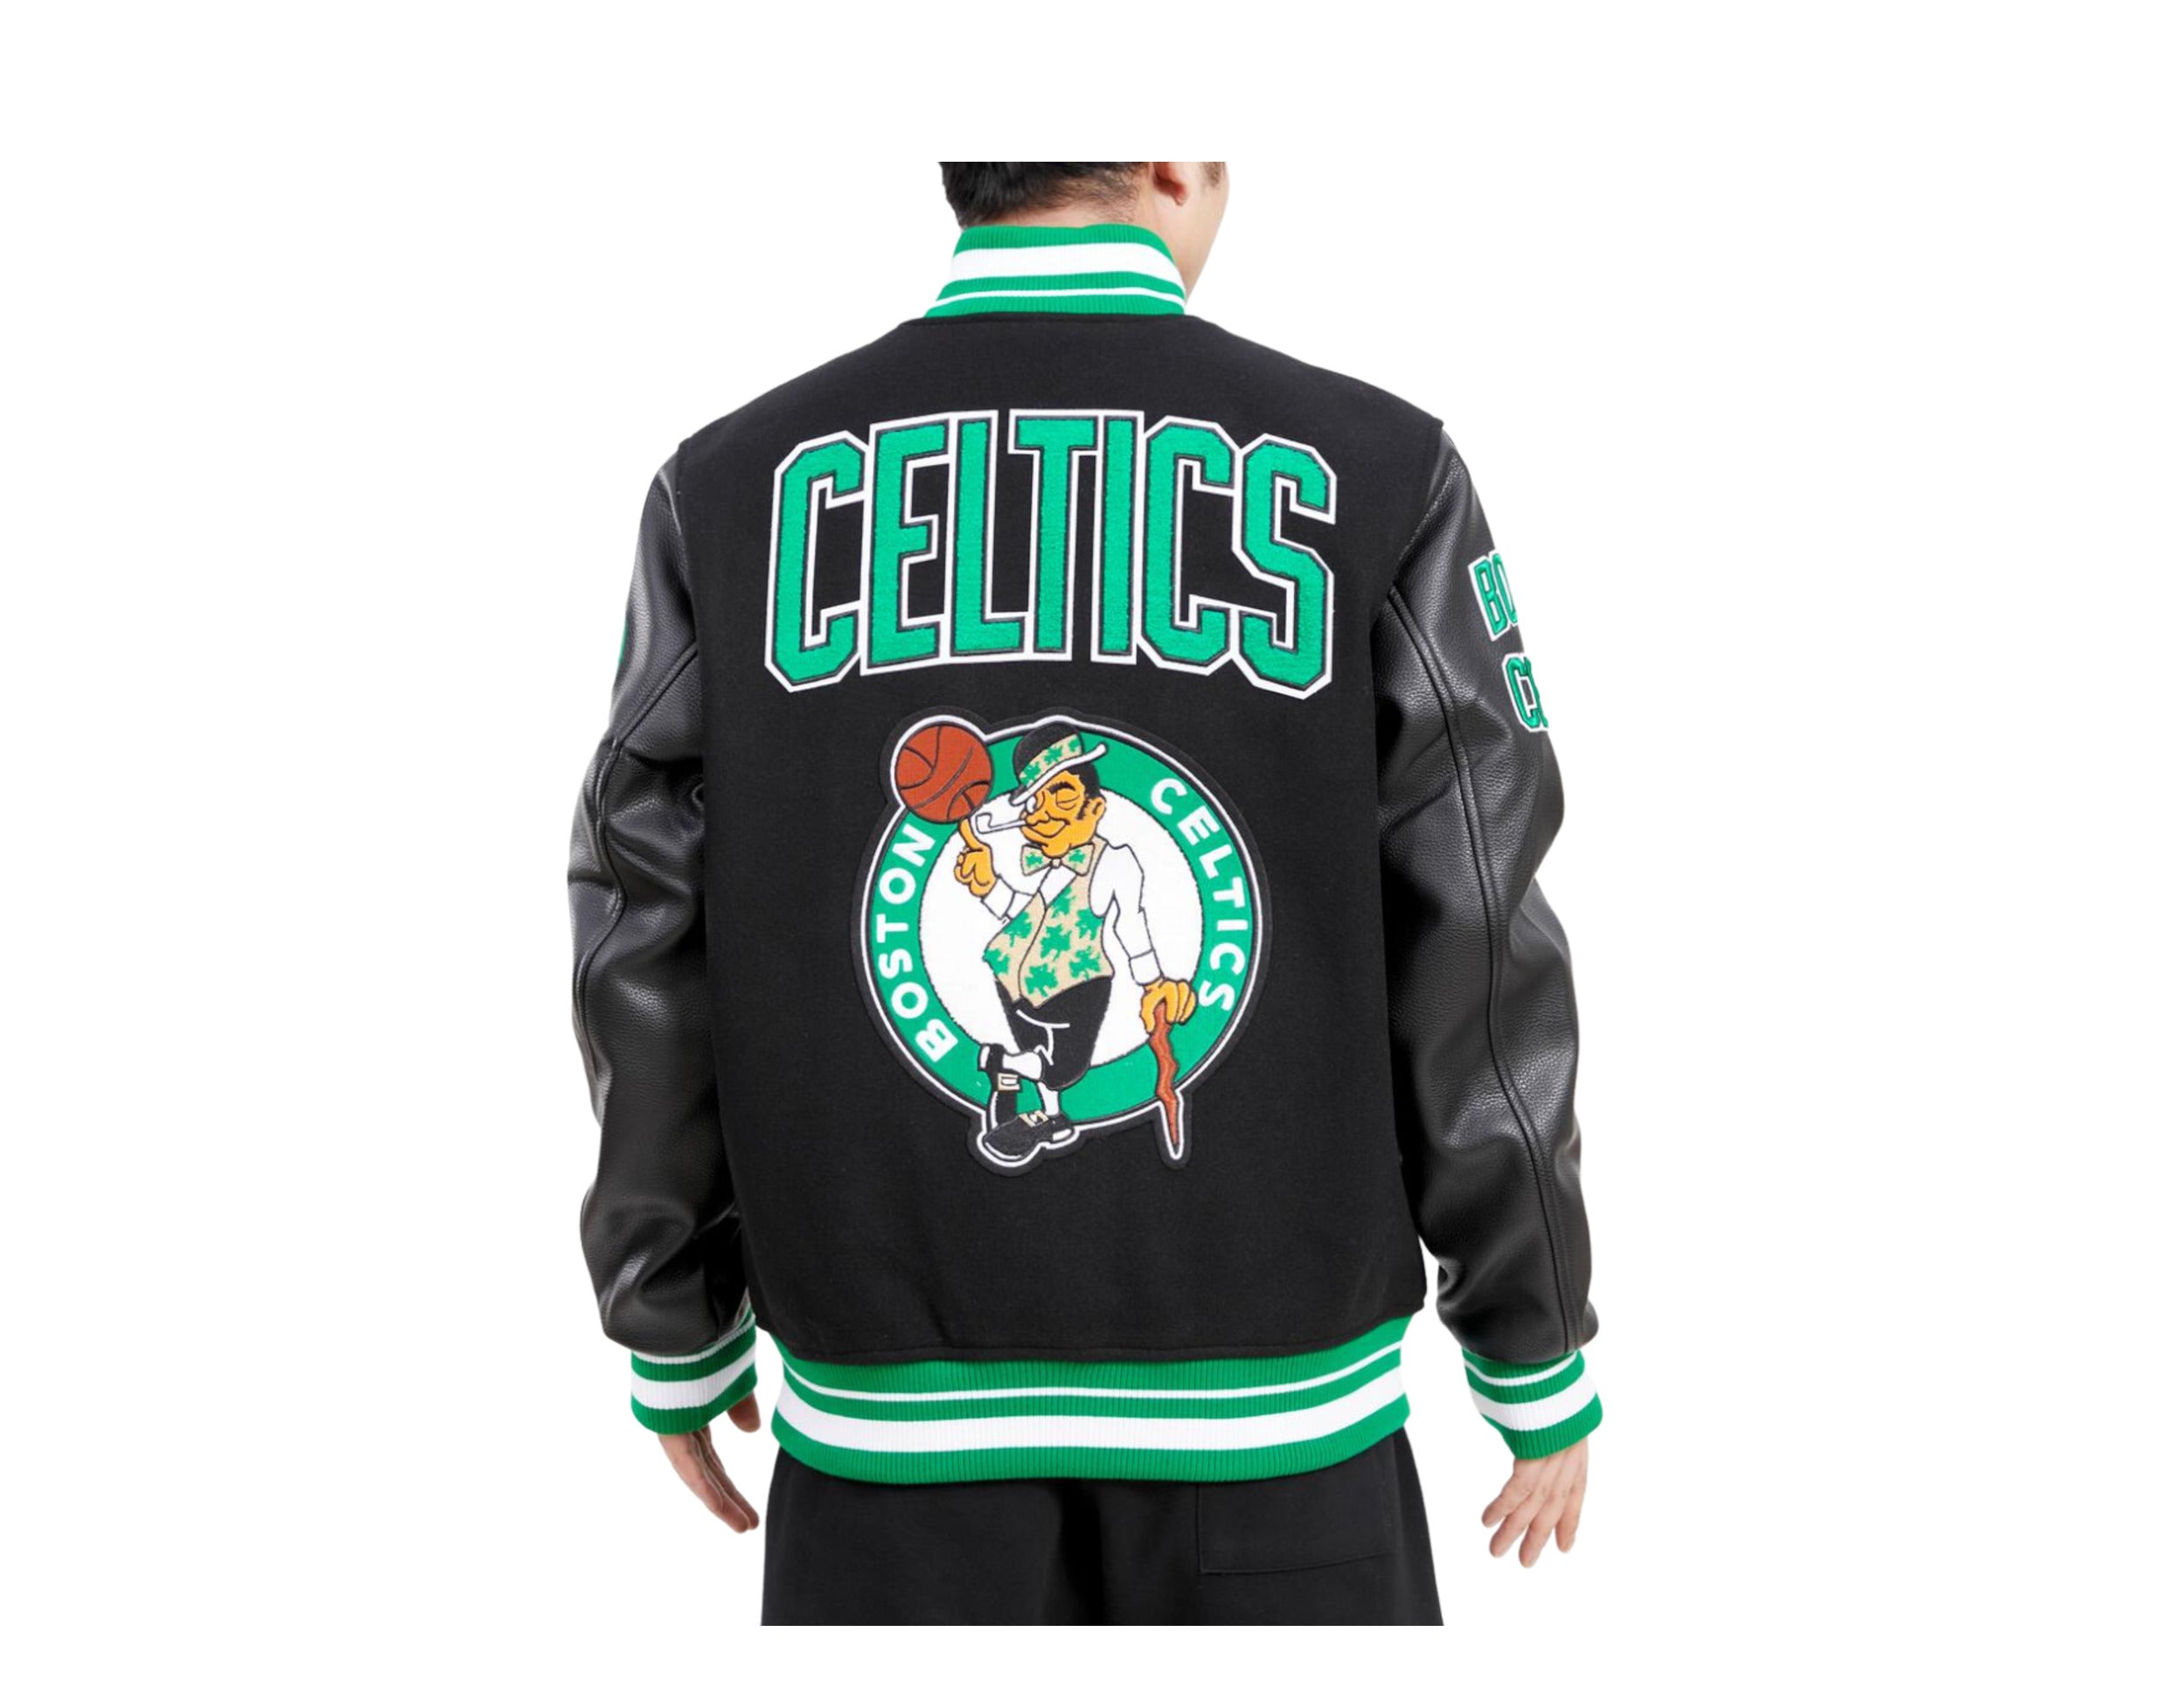 Pro Standard NBA Boston Celtics Retro Classic Varsity Men's Jacket L